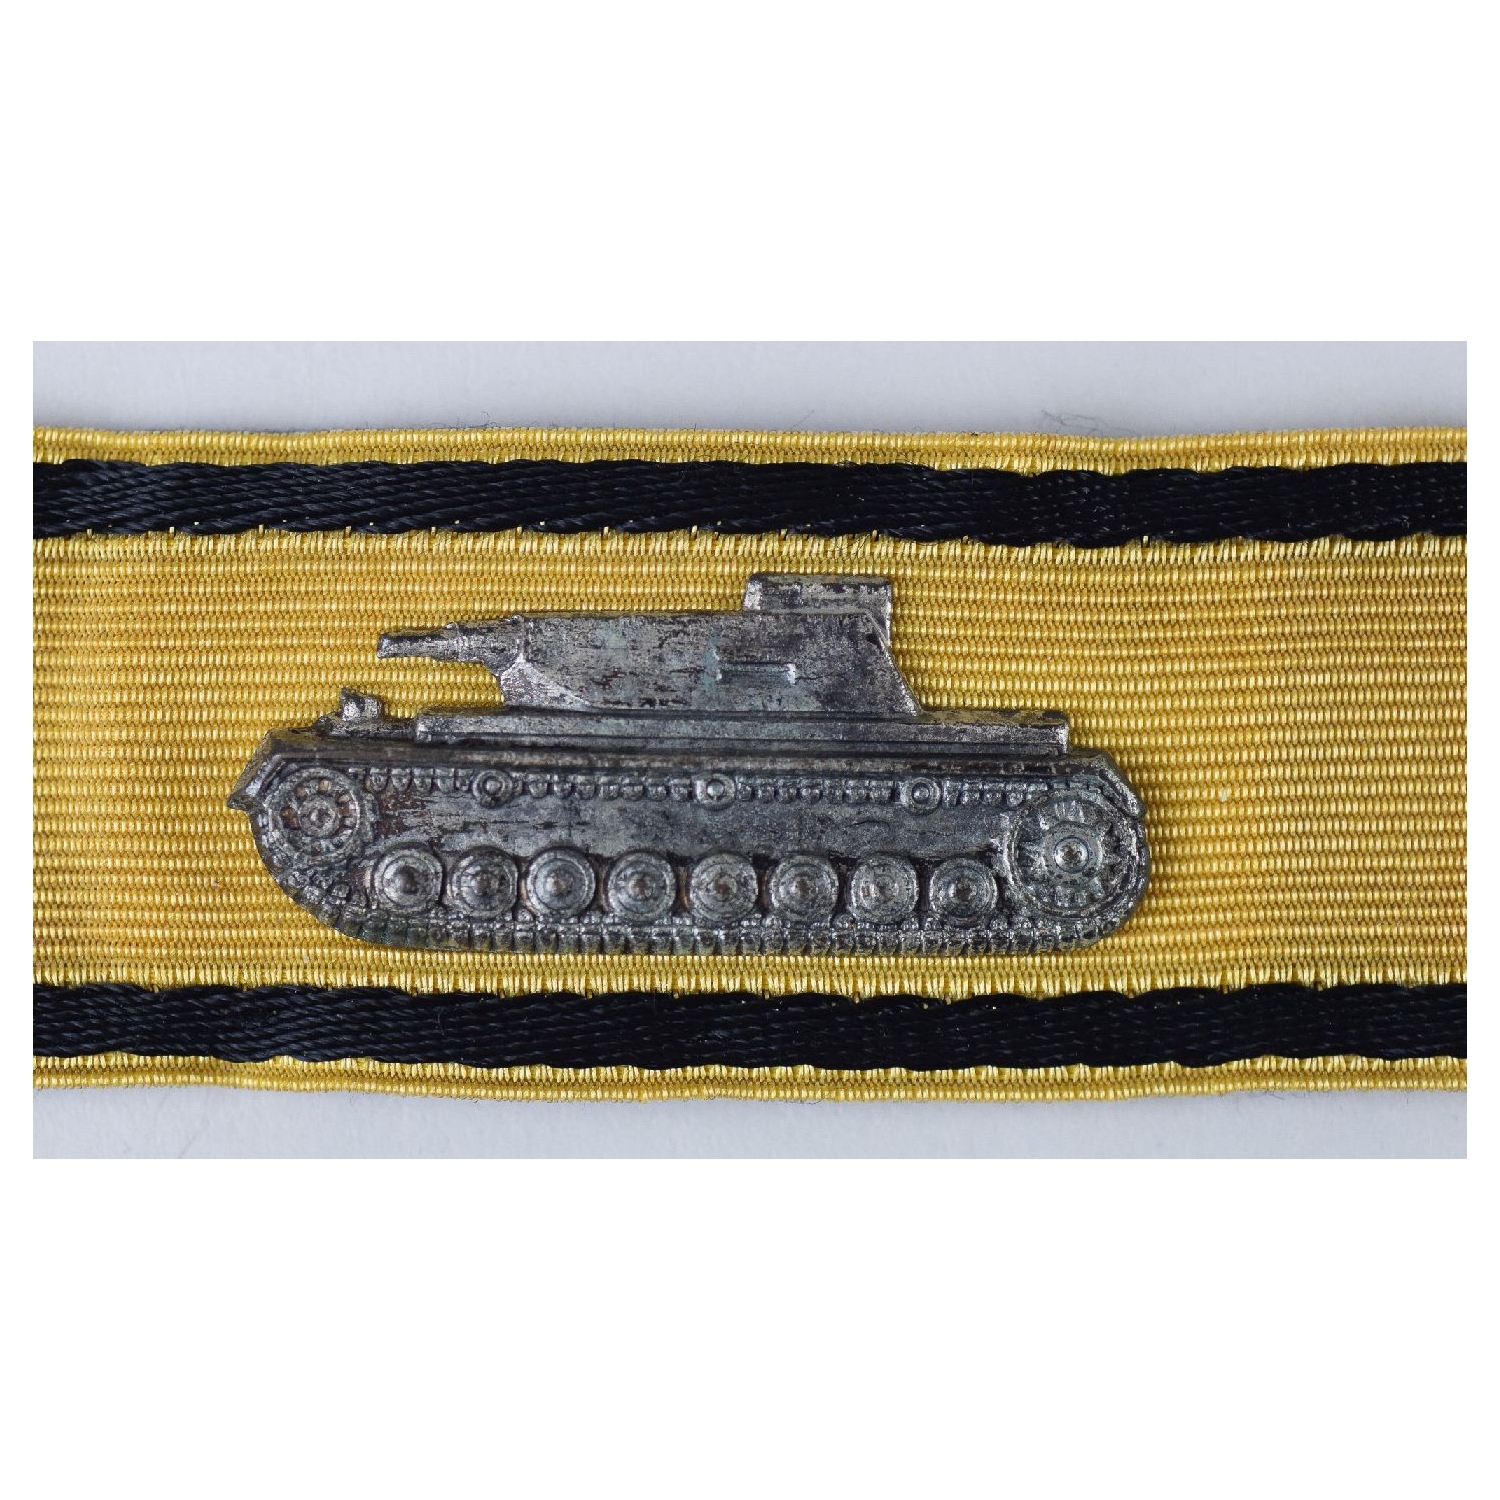 Goldenes Sonderabzeichen für das Niederkämpfen von Panzerkampfwagen